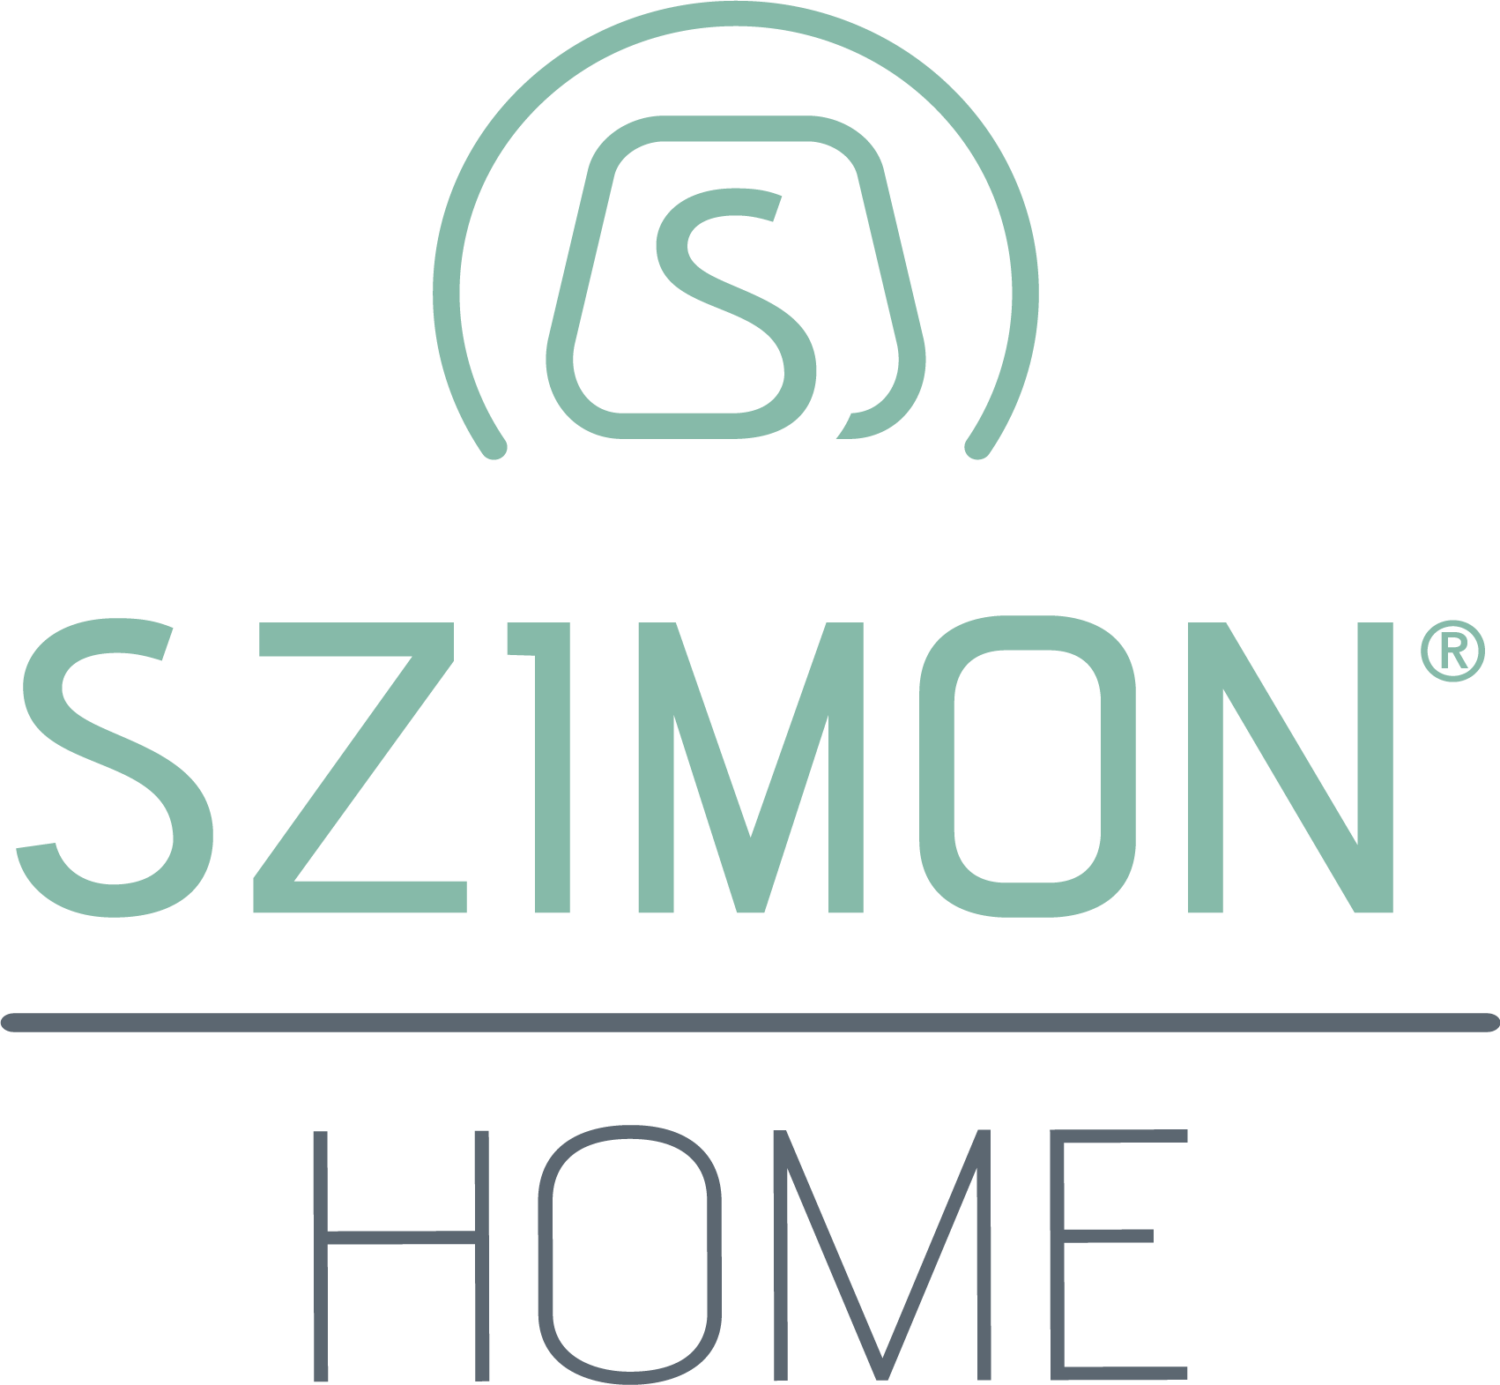 Szimon Home